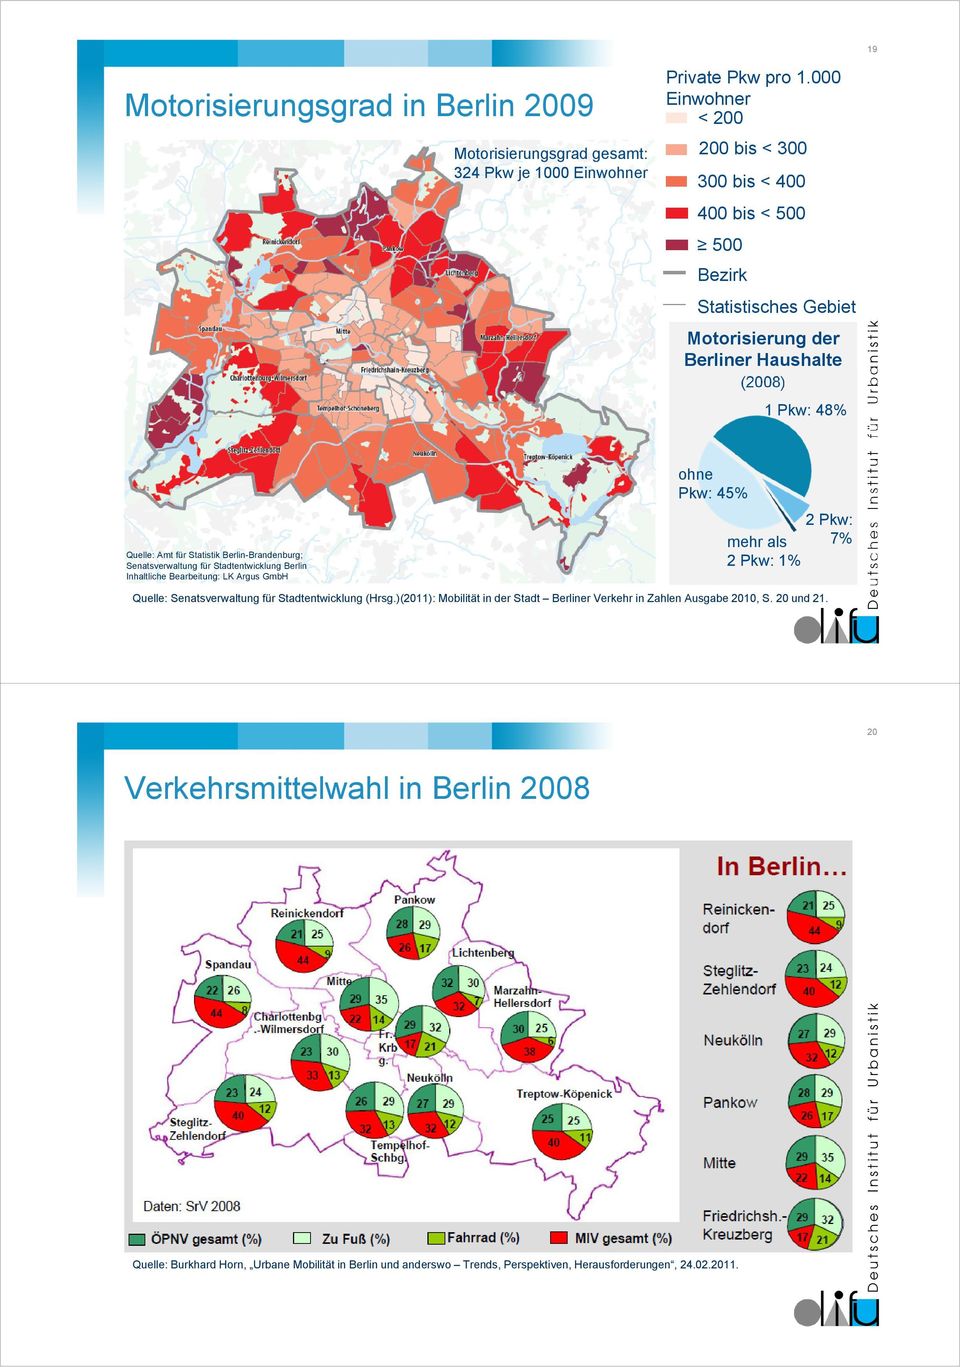 000 Einwohner < 200 200 bis < 300 300 bis < 400 400 bis < 500 500 Bezirk Statistisches Gebiet Motorisierung der Berliner Haushalte (2008) ohne Pkw: 45% mehr als 2 Pkw: 1% 1 Pkw: